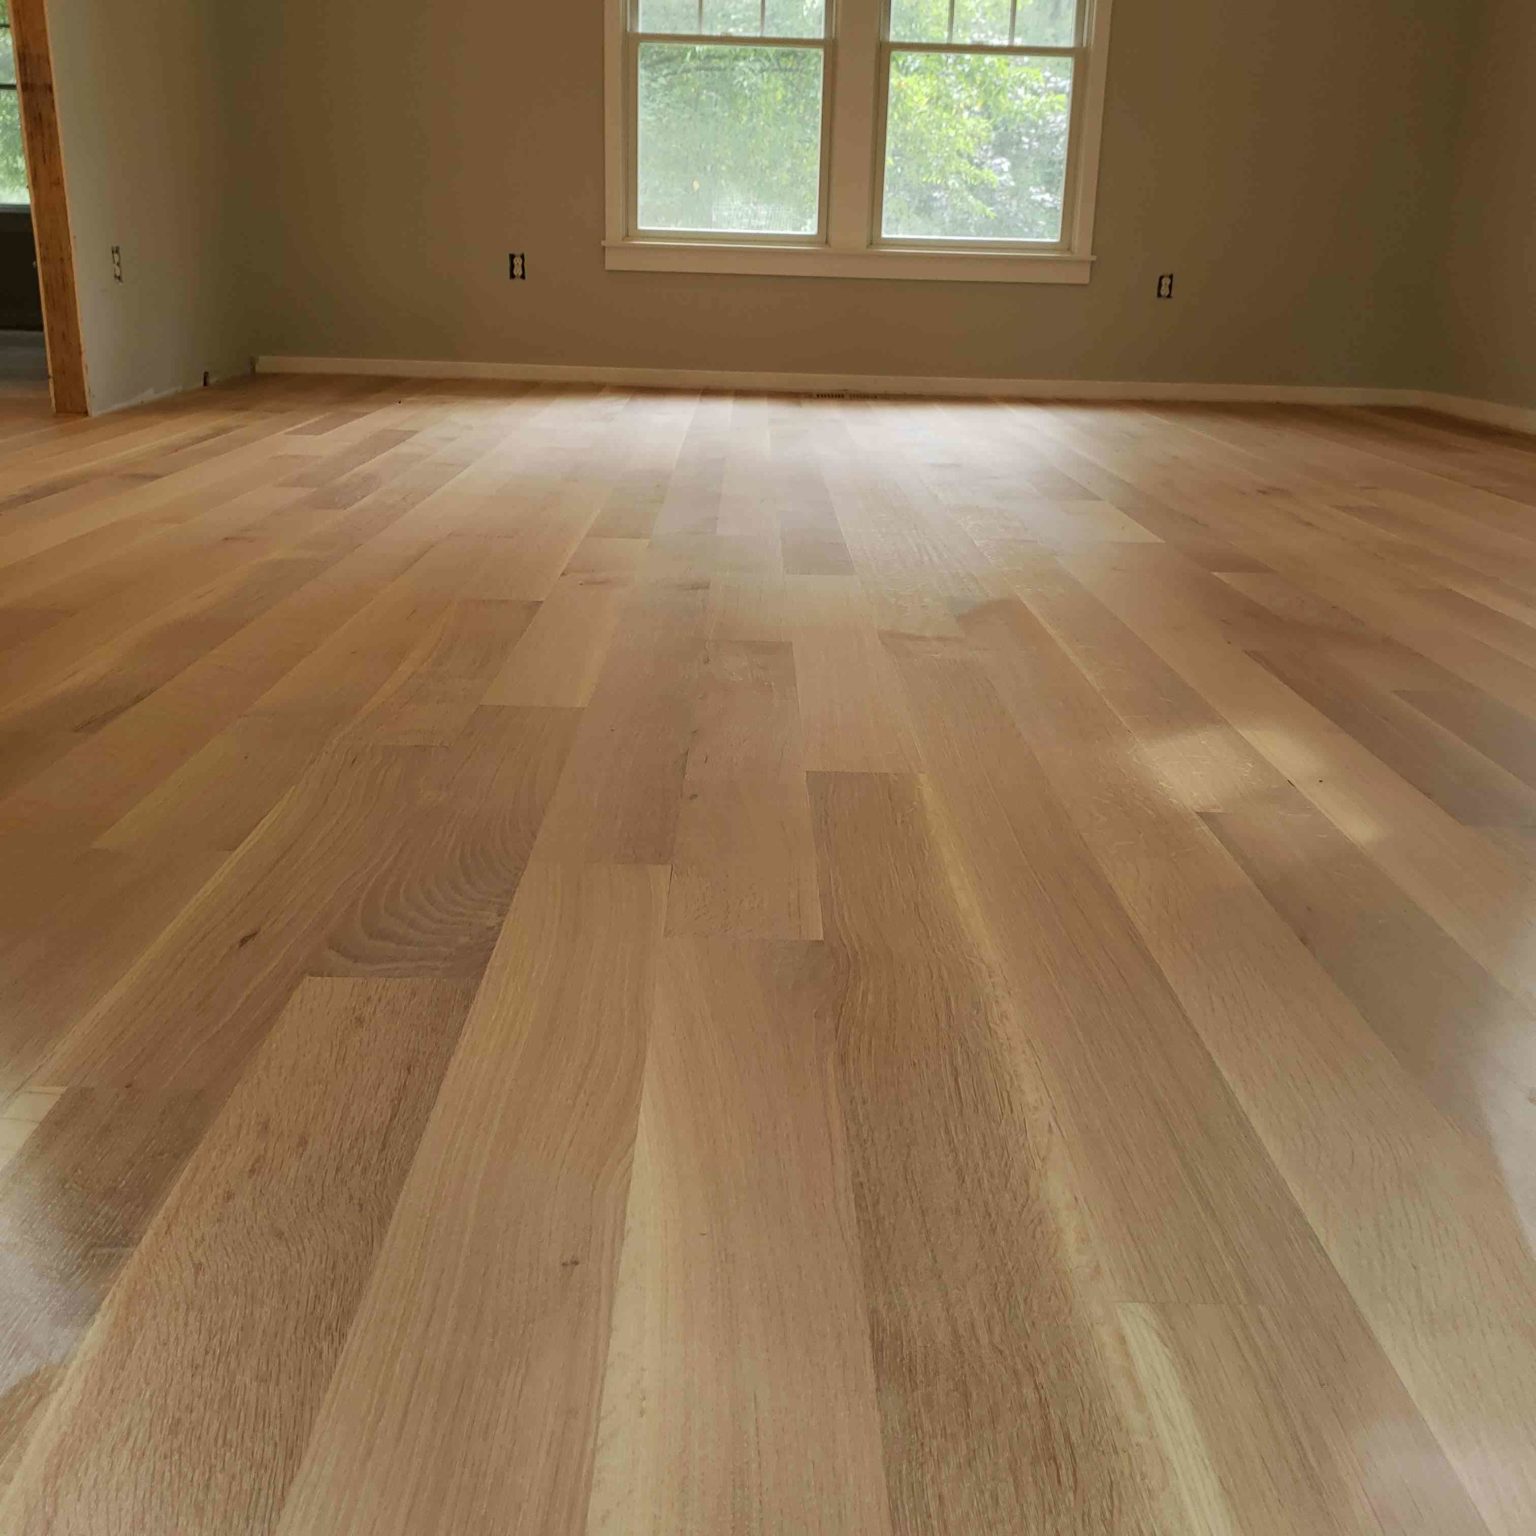 Hardwood Flooring Trends 2020 1536x1536 